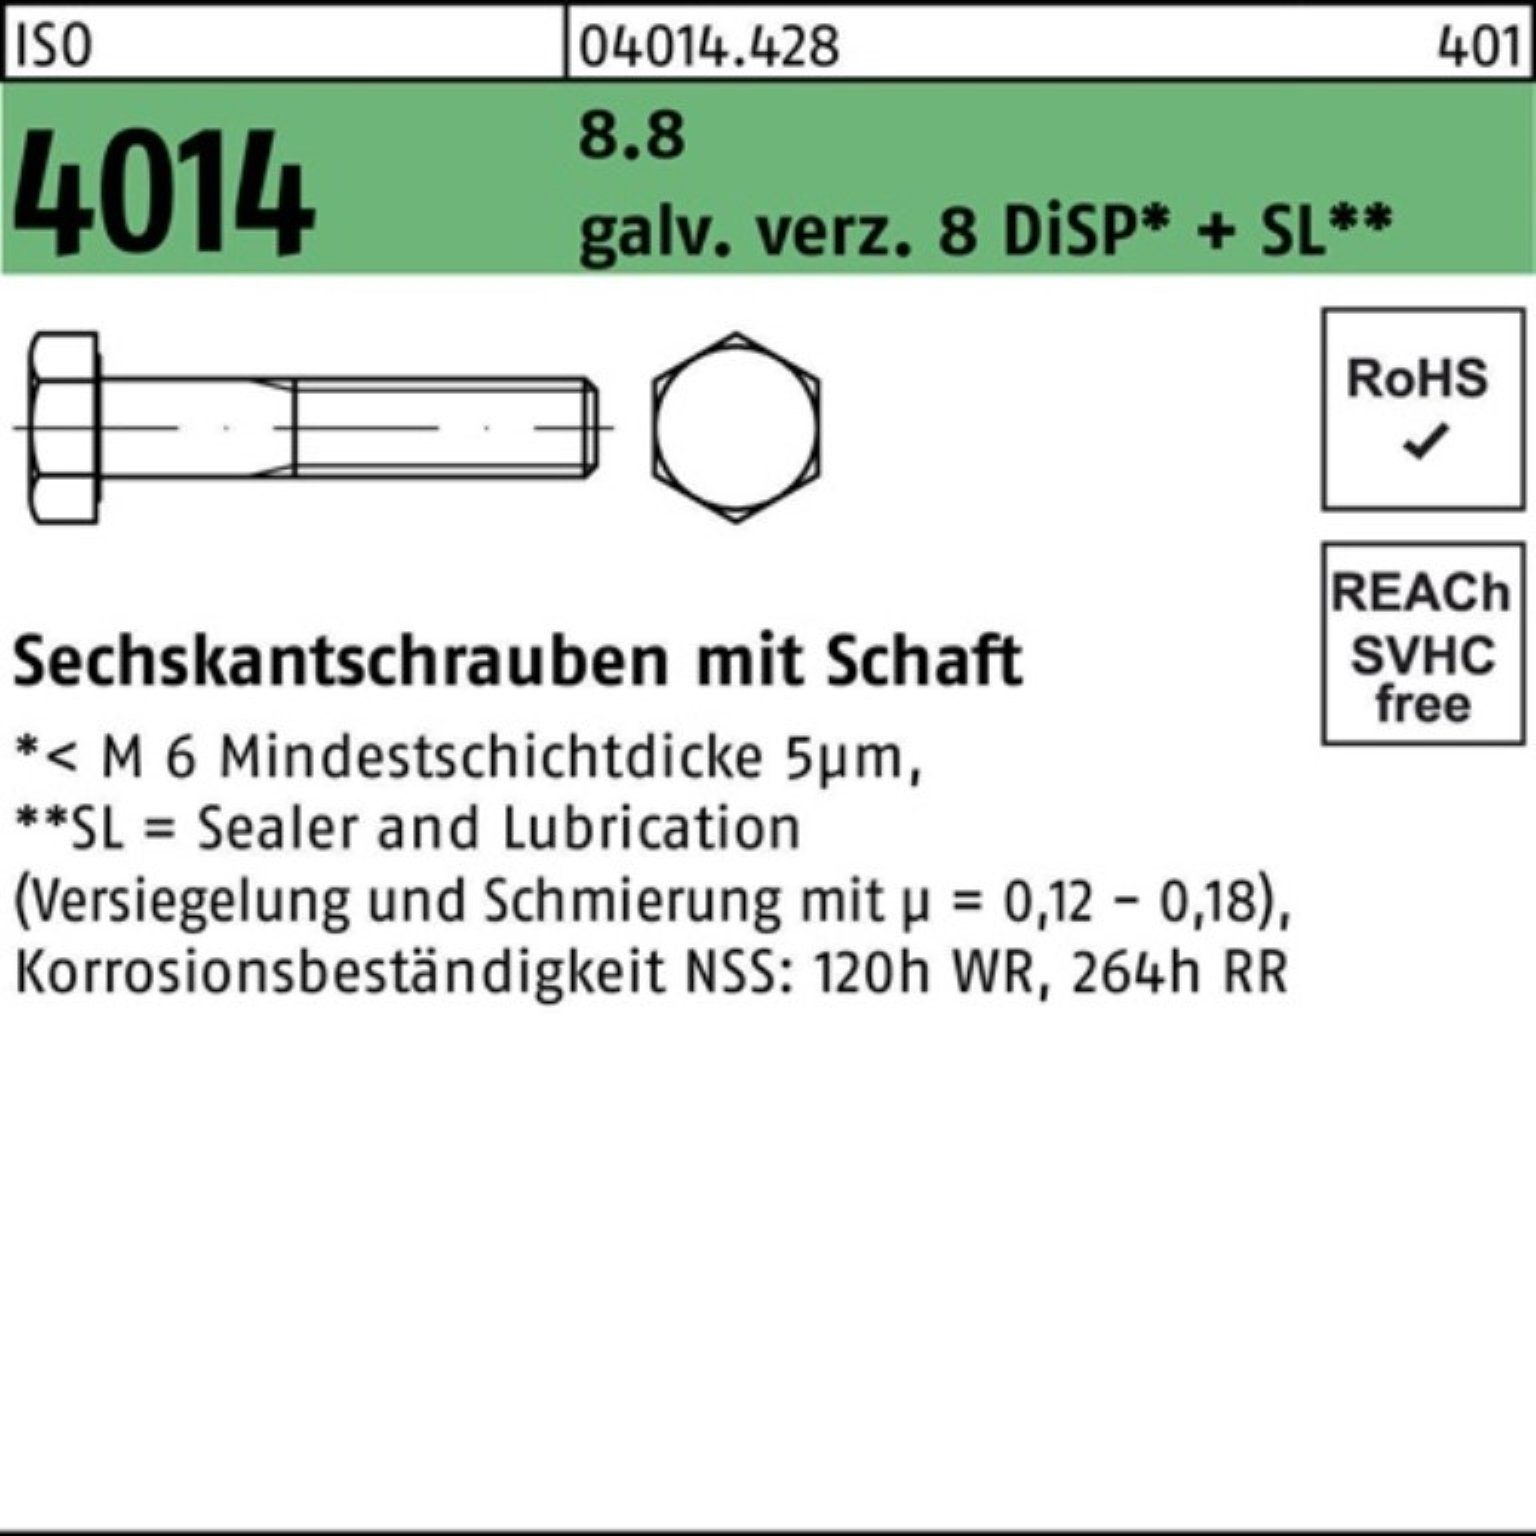 Bufab Sechskantschraube 100er Pack Sechskantschraube ISO 4014 Schaft M20x260 8.8 galv.verz. 8